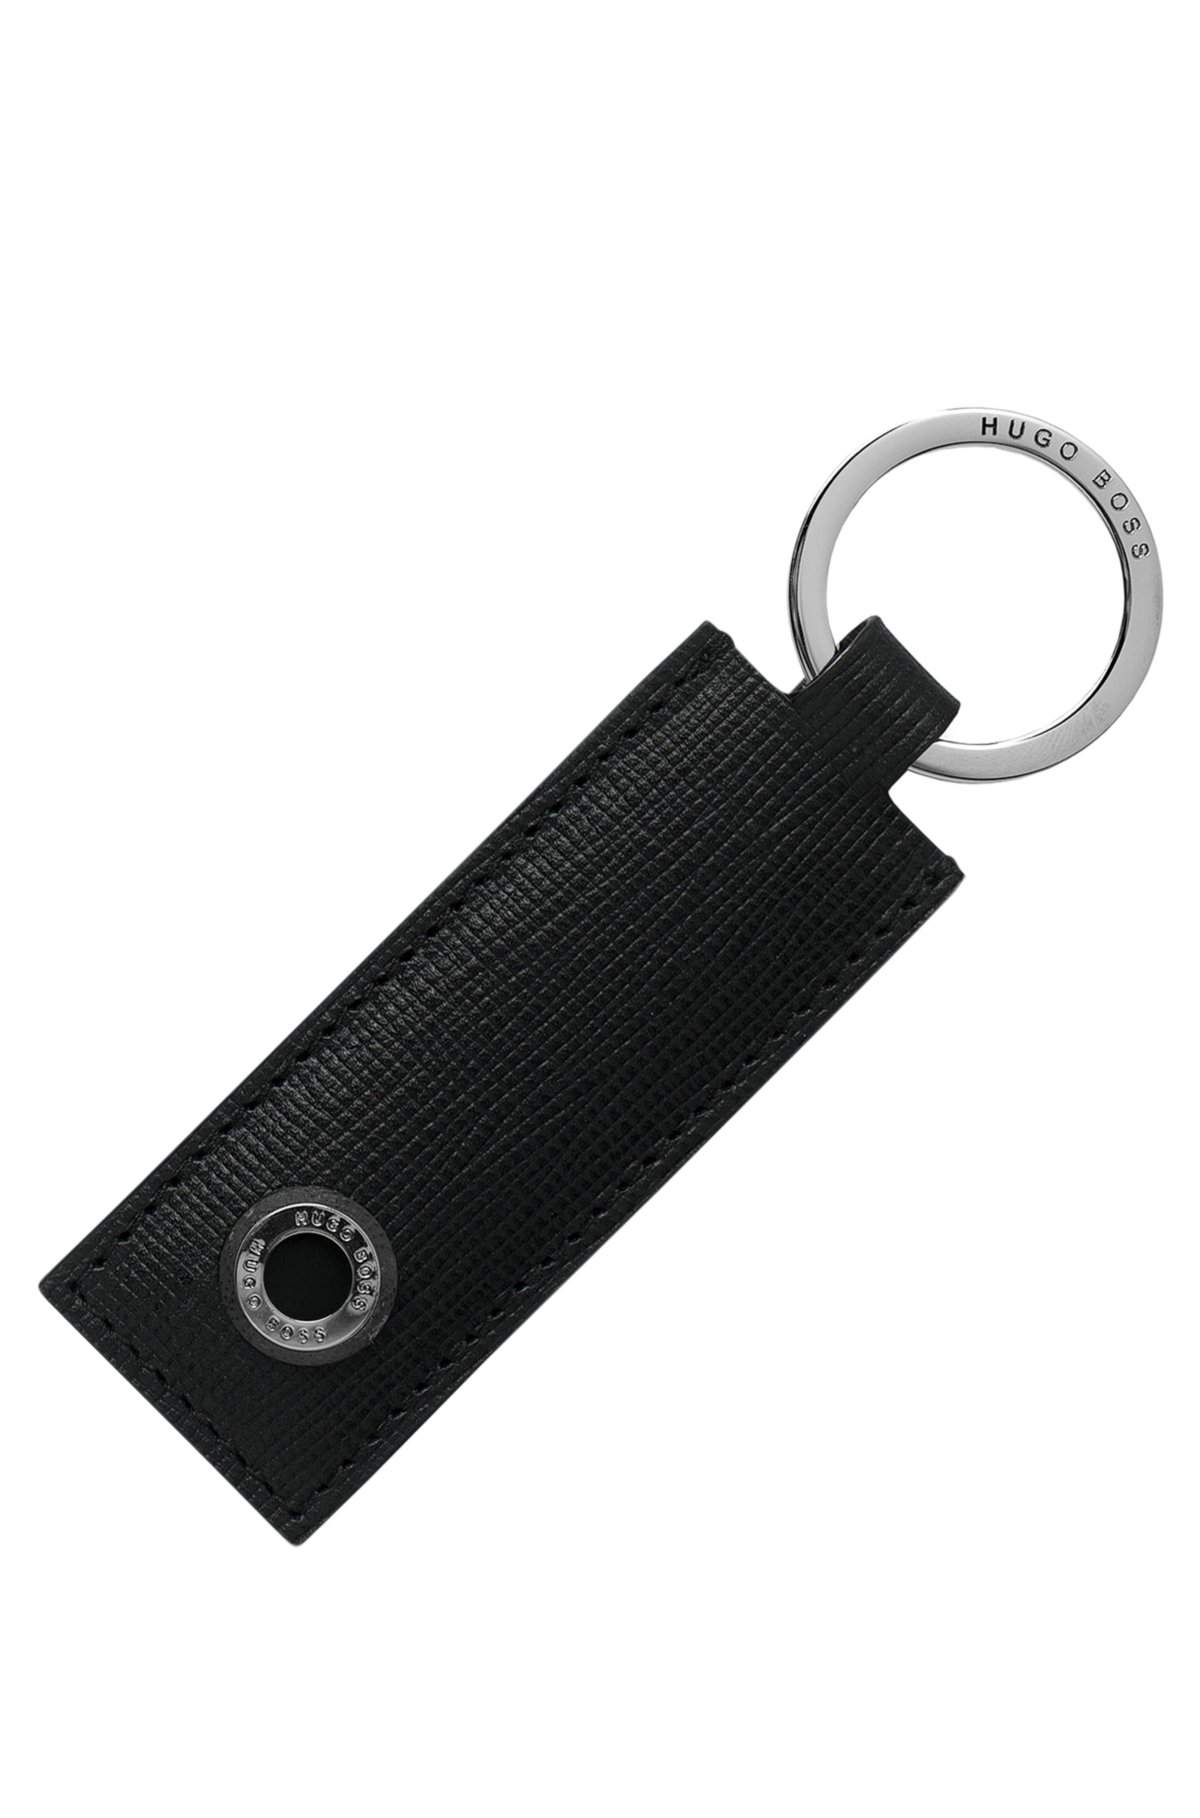 Og Kænguru Smøre BOSS - Textured-leather key ring with branded hardware